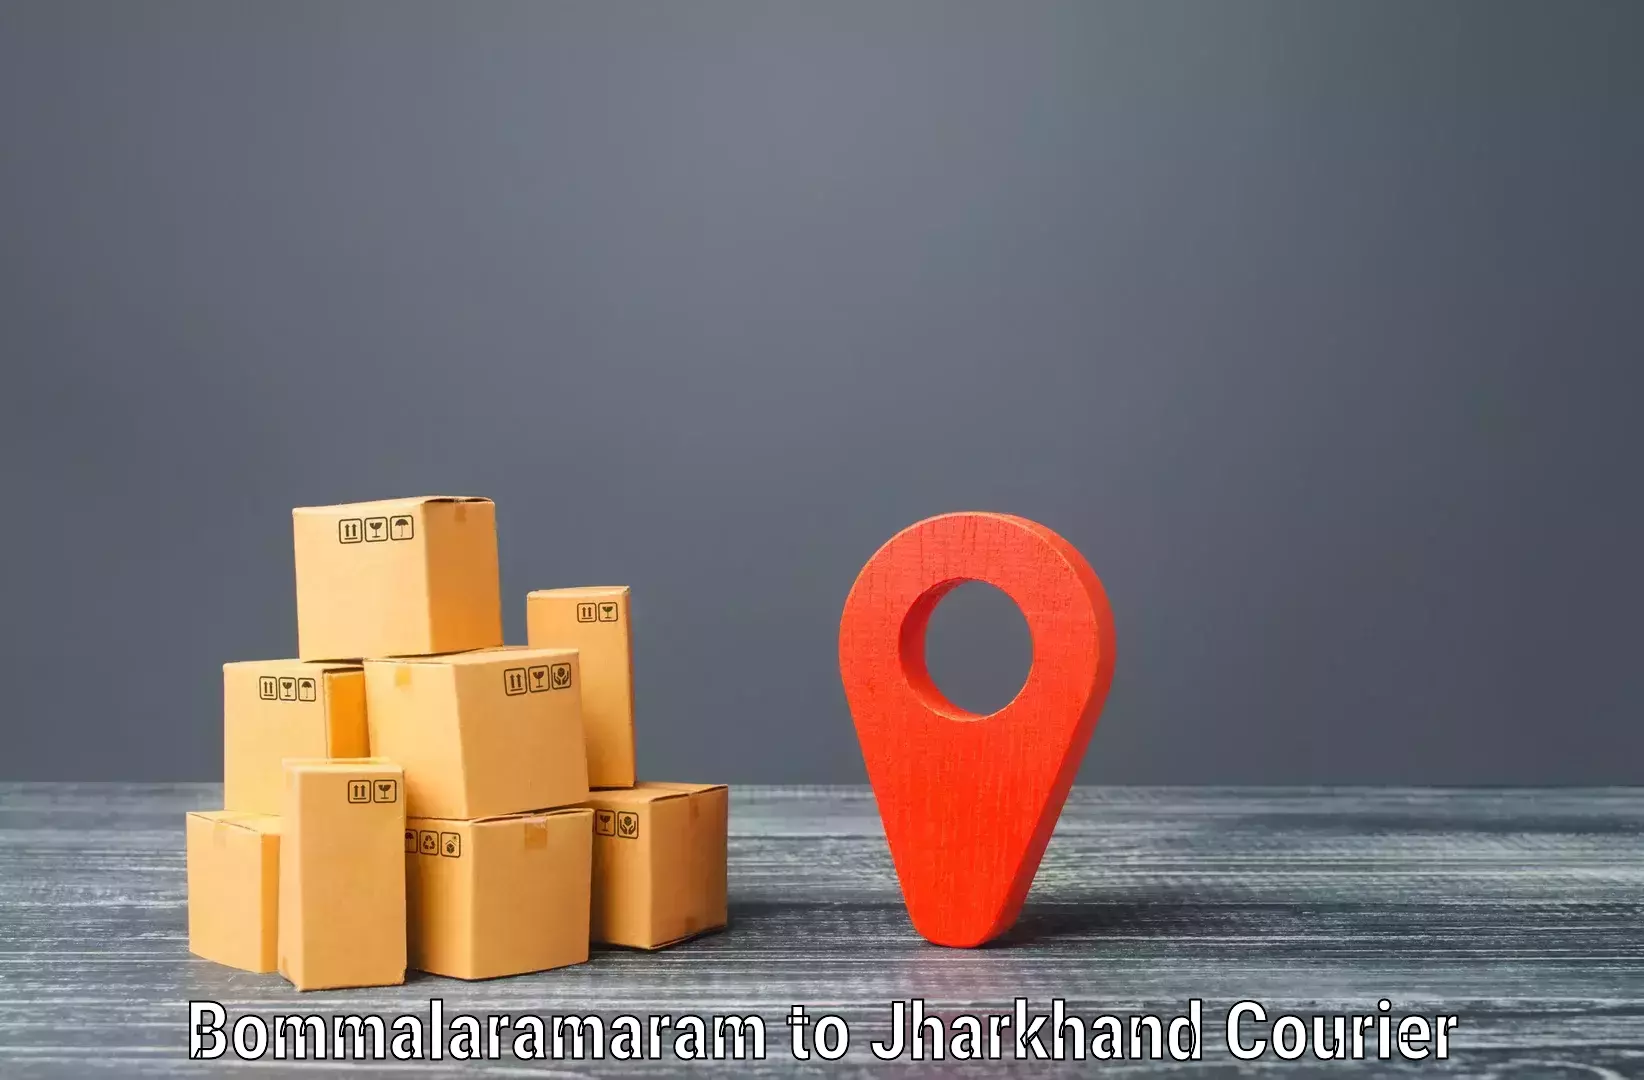 Specialized shipment handling in Bommalaramaram to Barwadih